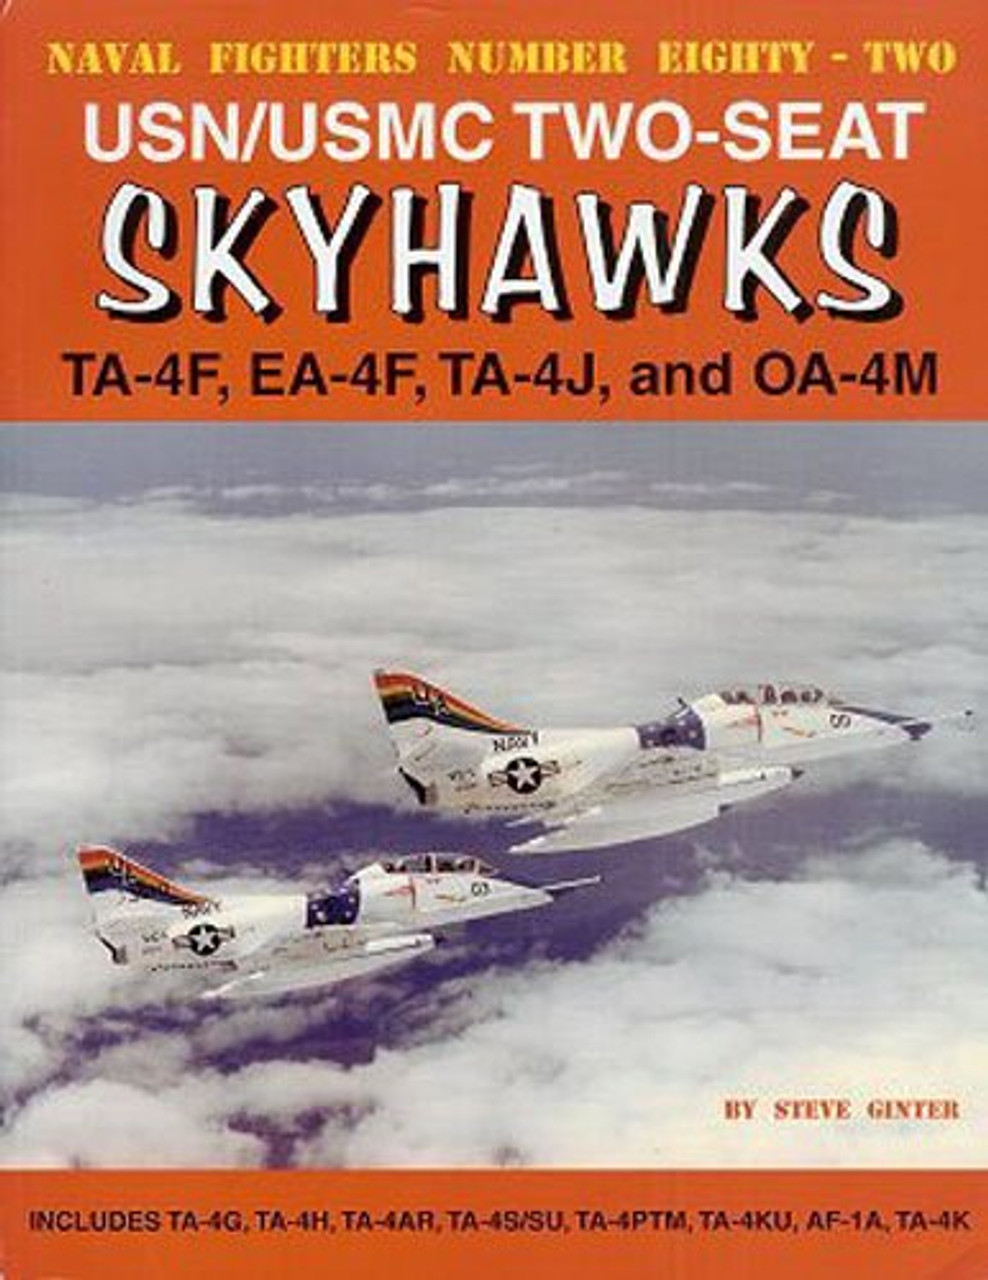 NF082 - USN/USMC Two-Seat Skyhawks: TA-4F, EA-4F, TA-4J and OA-4M